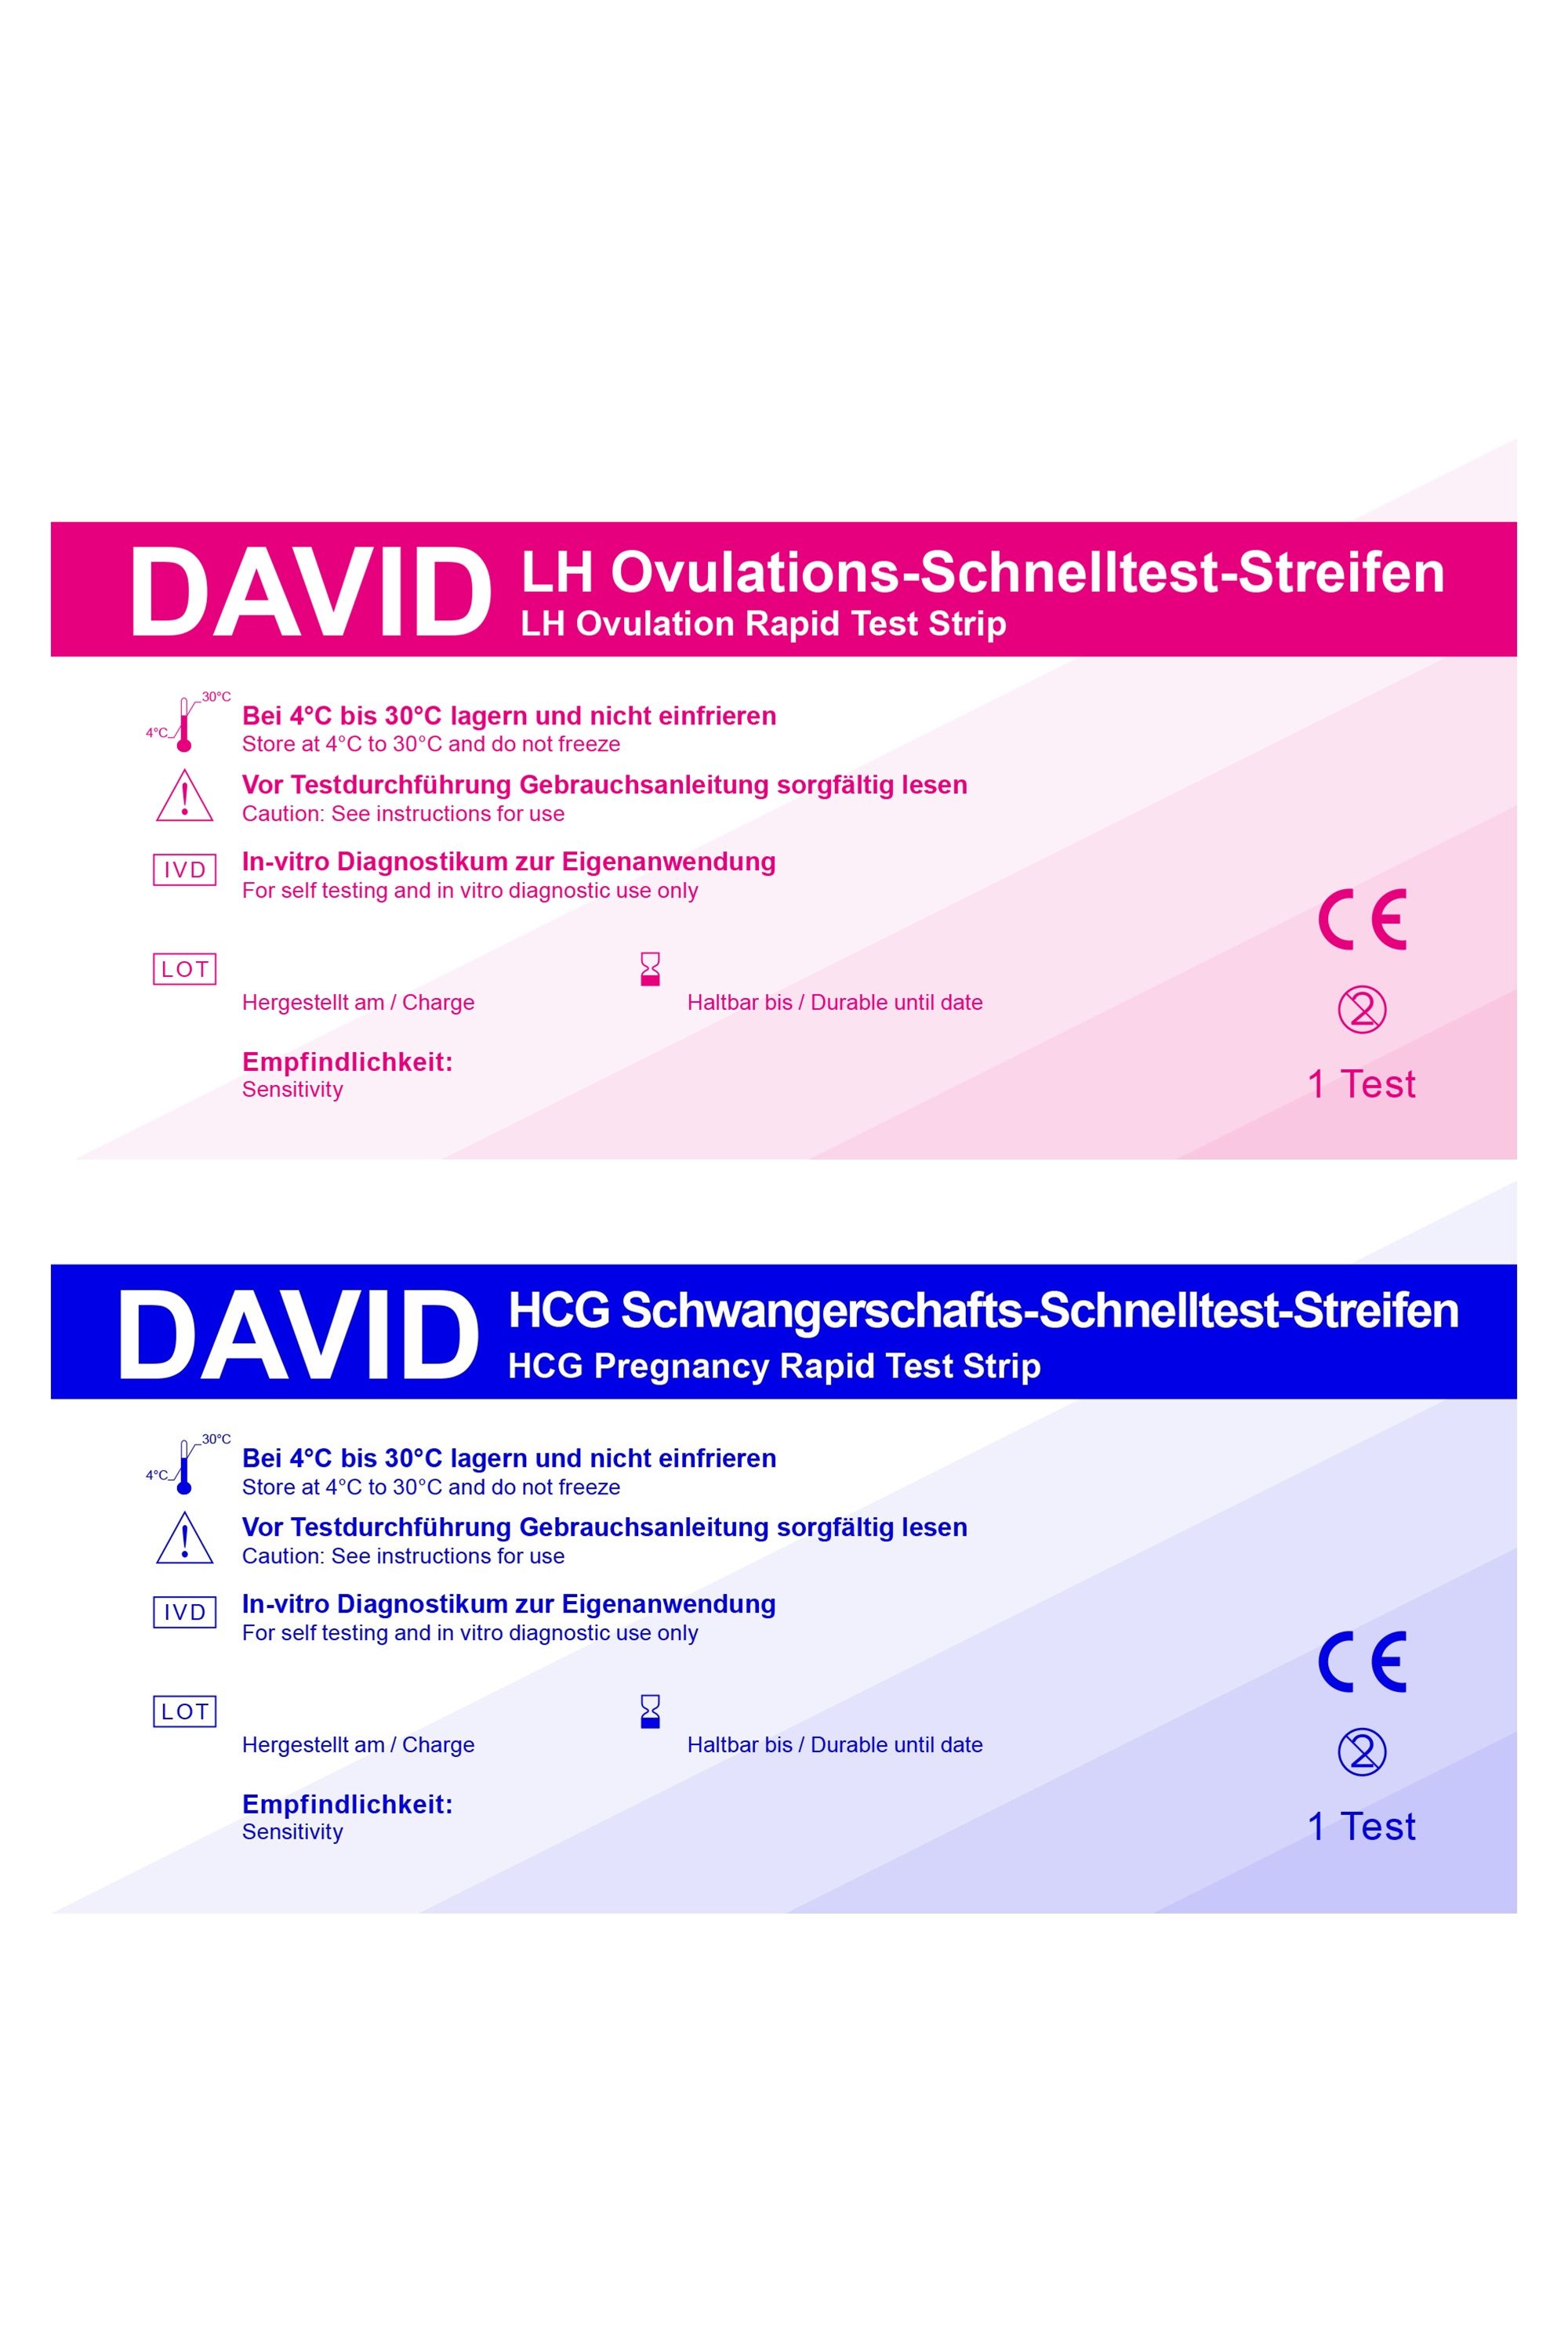 David Ovulationstest 20 miu/ml + Schwangerschaftst. 10miu/ml